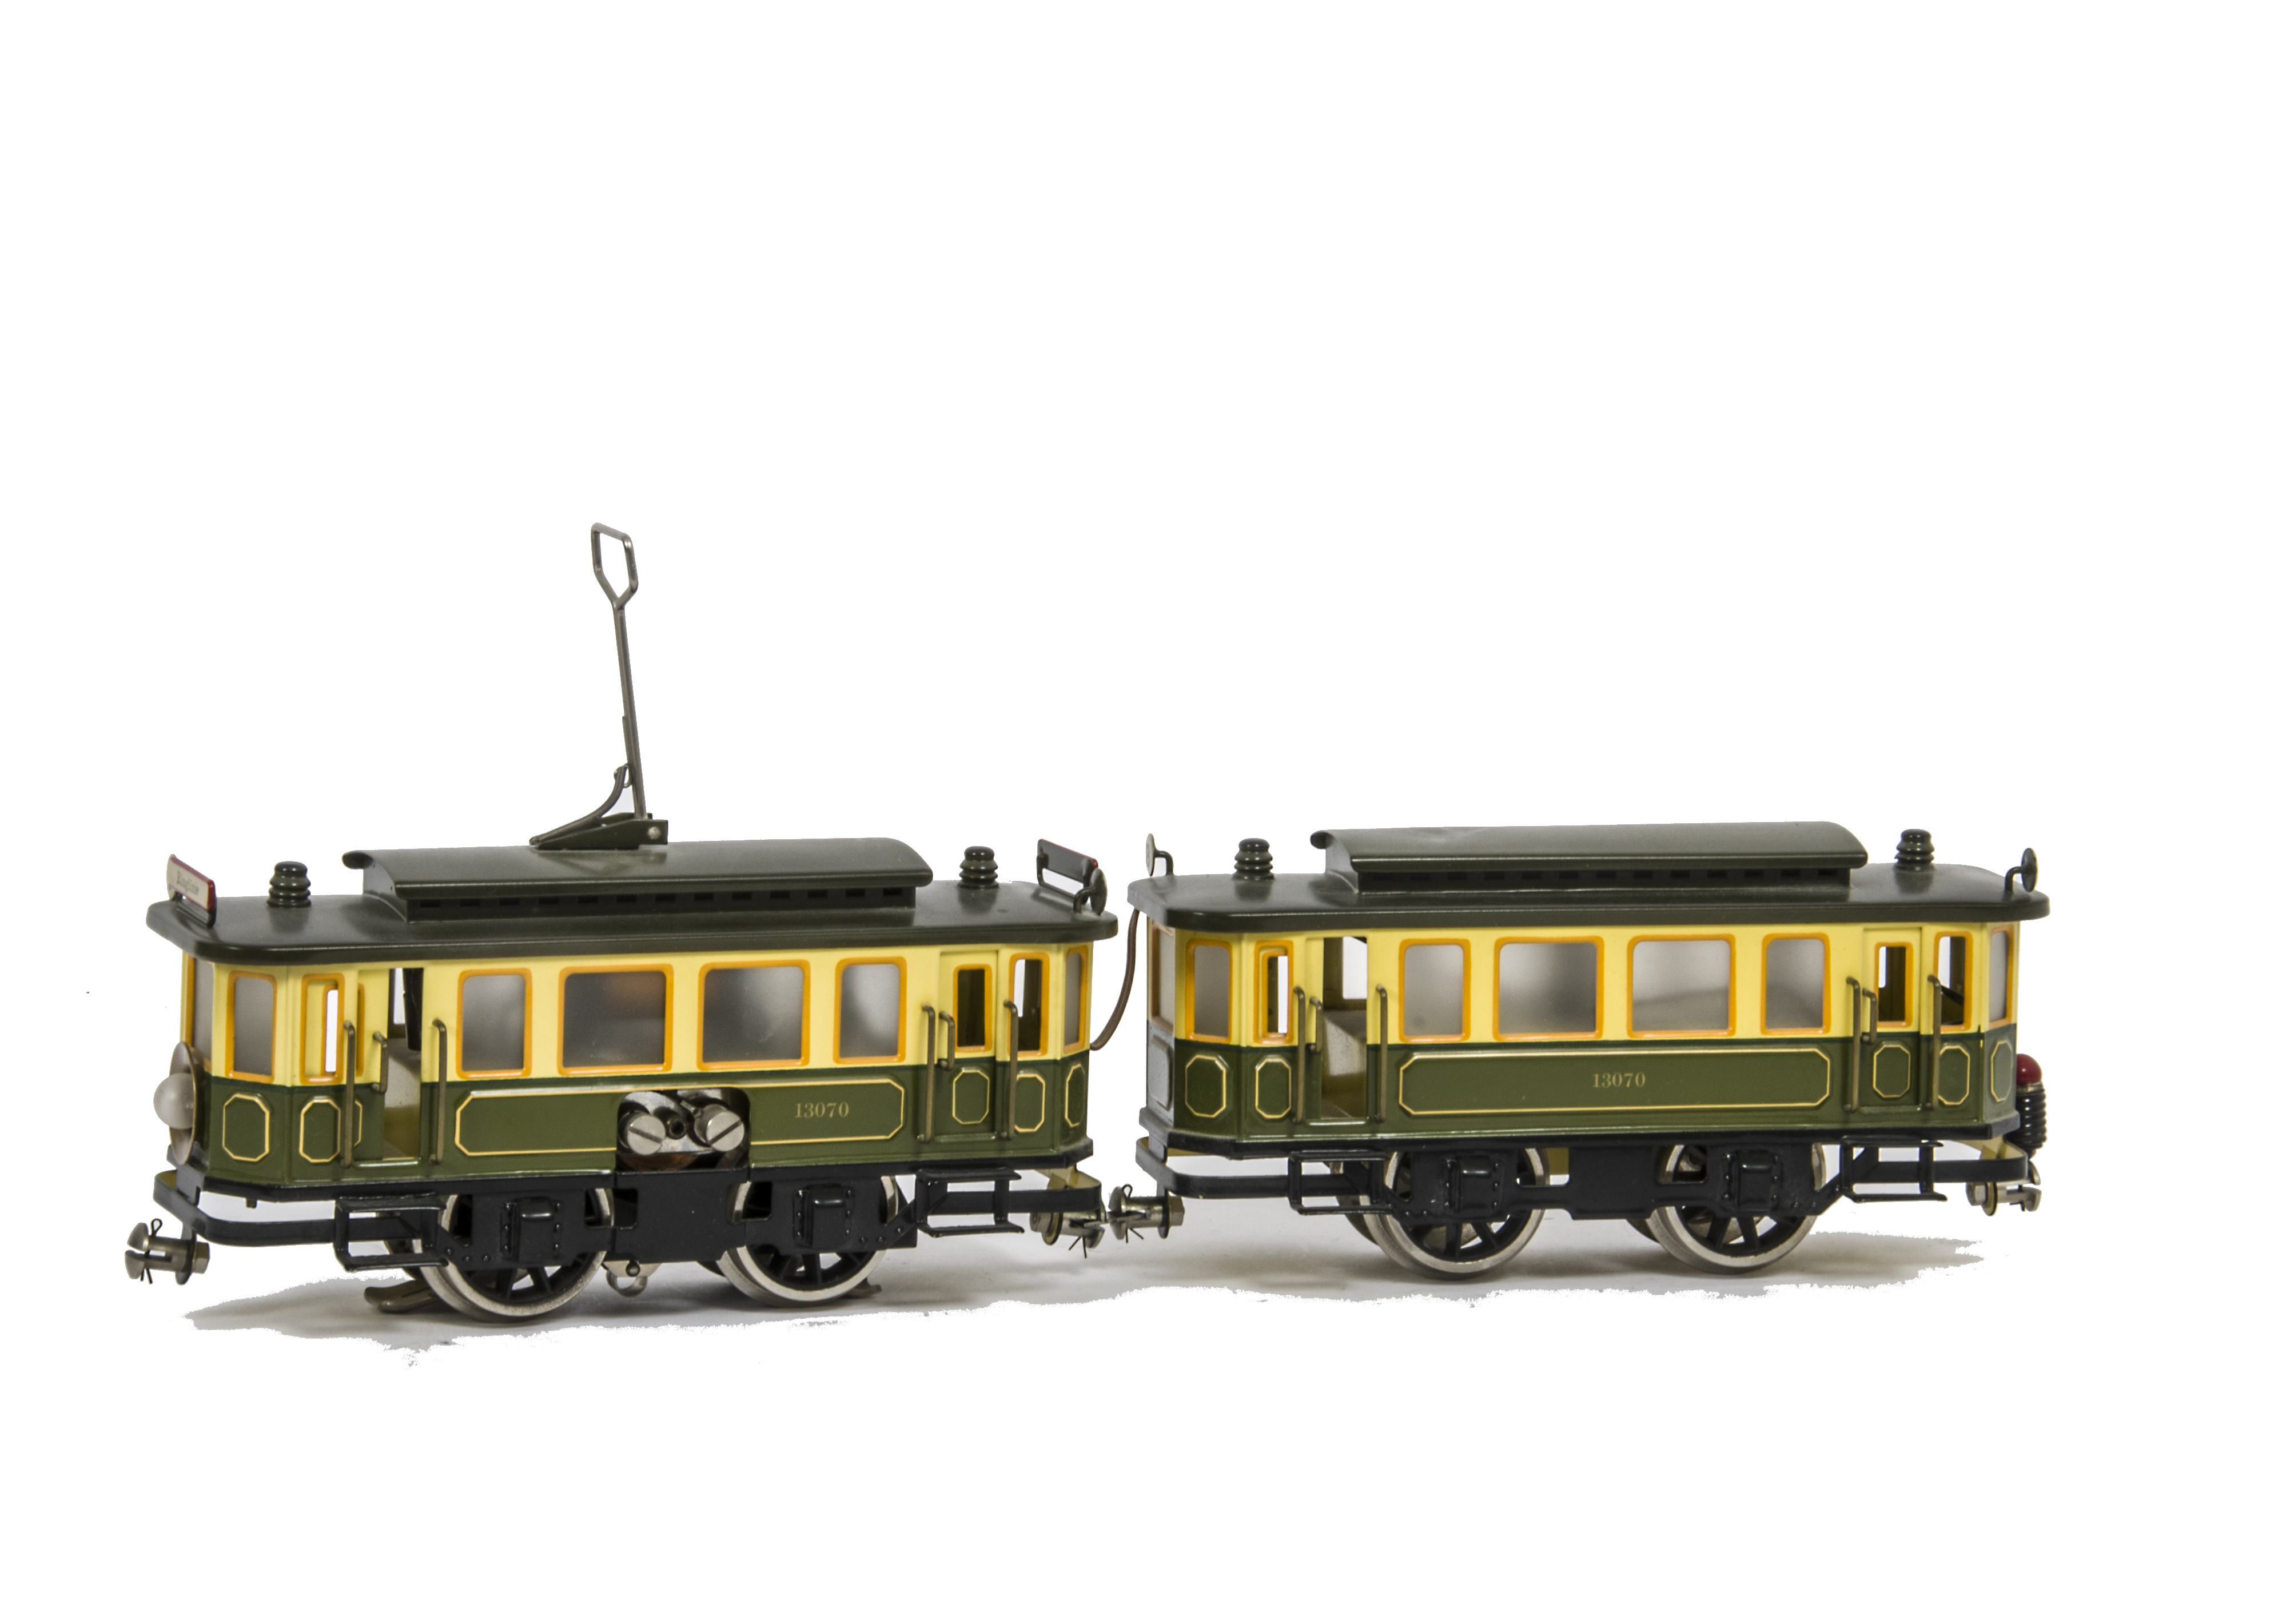 A Hehr (Märklin Reproduction) Continental 0 Gauge 3-rail Tram and Trailer Set, ref 13070, in green/